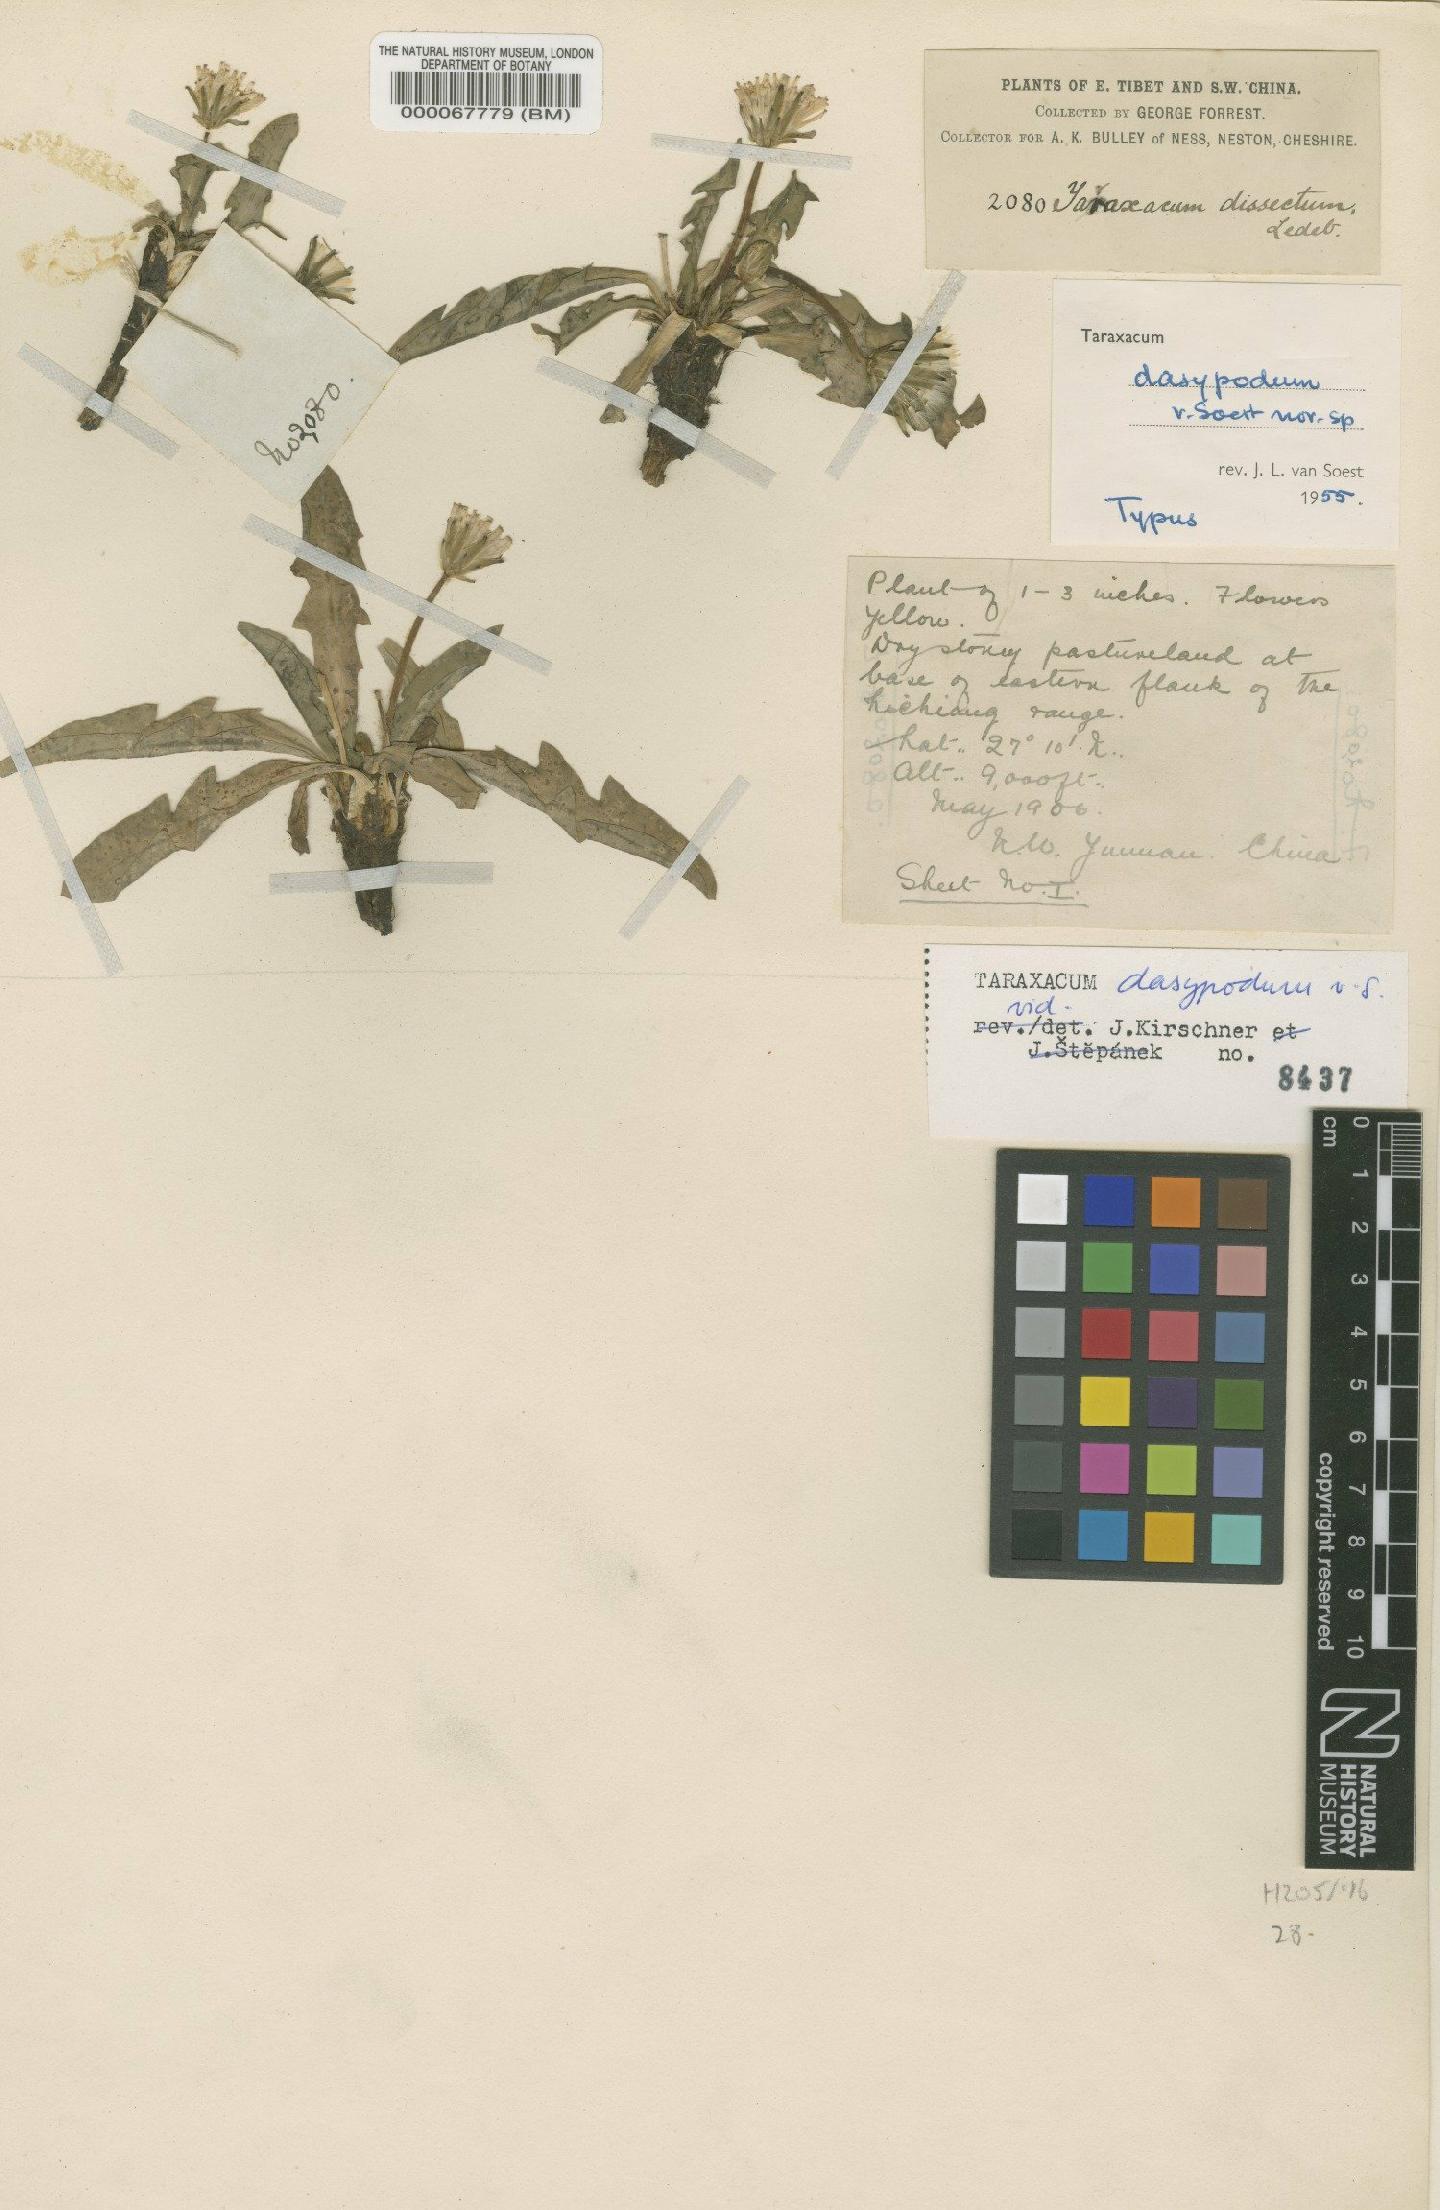 To NHMUK collection (Taraxacum dasypodum Soest; Type; NHMUK:ecatalogue:481724)